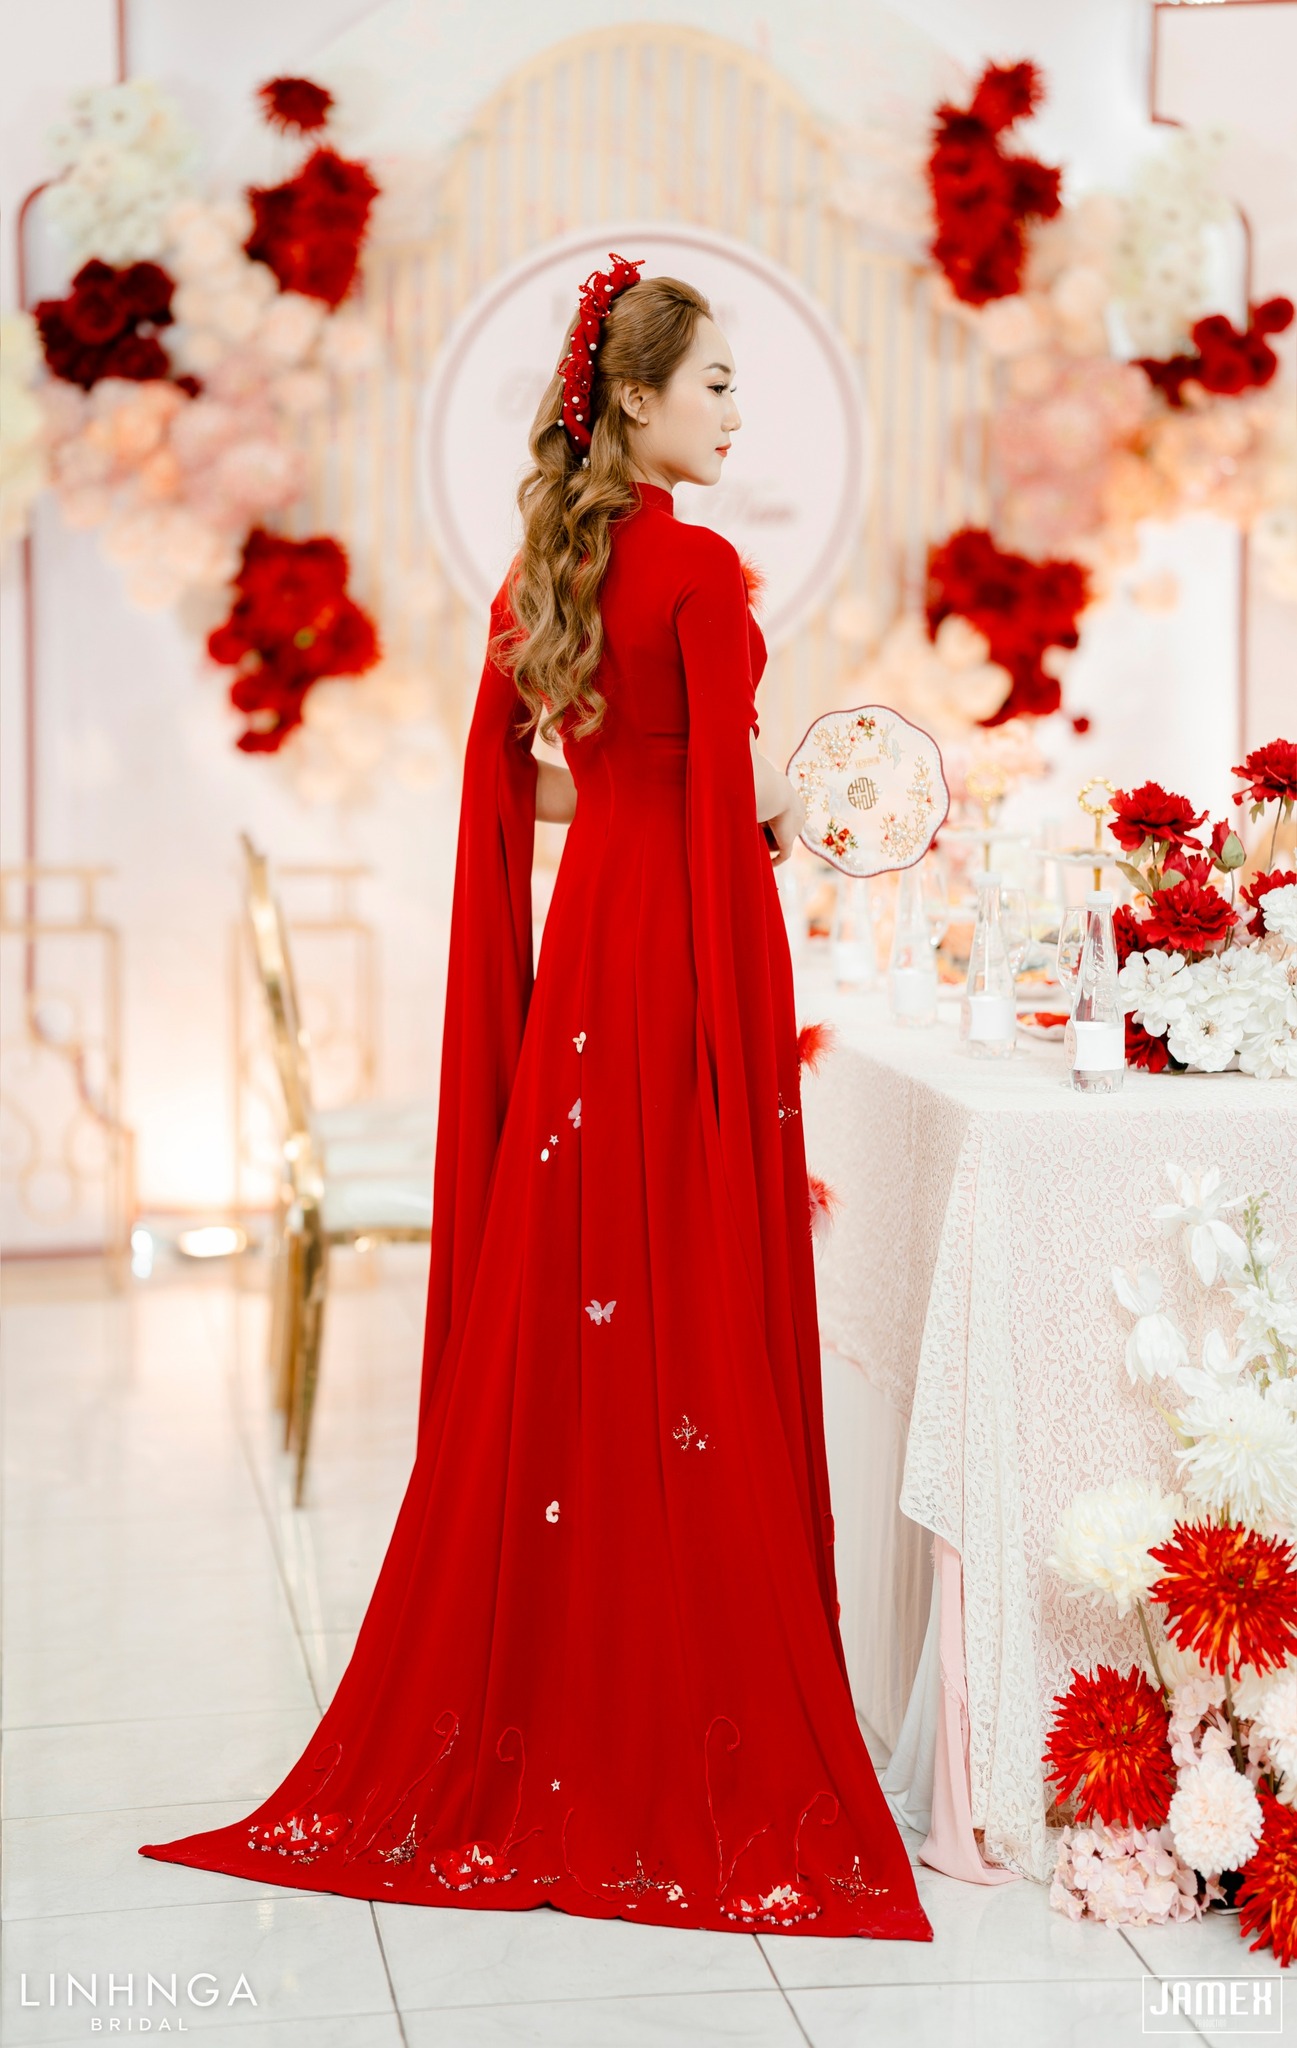 May thuê áo dài cưới mặc nước đầu tại Linh Nga Bridal